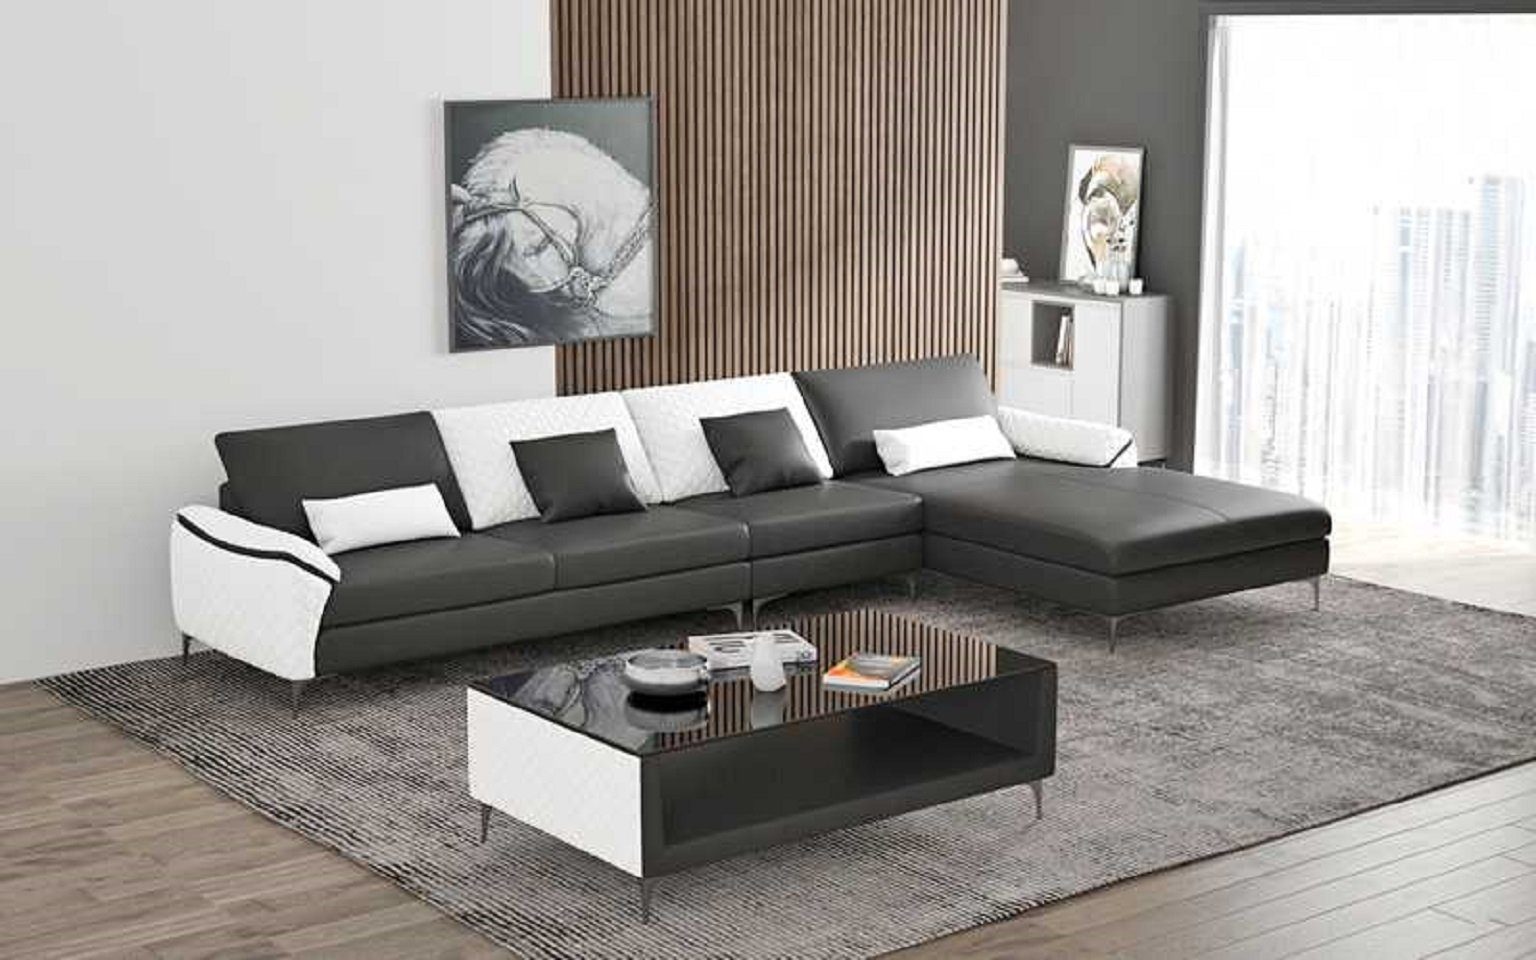 Wohnzimmer, Ecksofa Schwarz L Made in Ecksofa Sofa Europe Teile, 3 Luxus Couch Form JVmoebel Eckgarnitur Liege